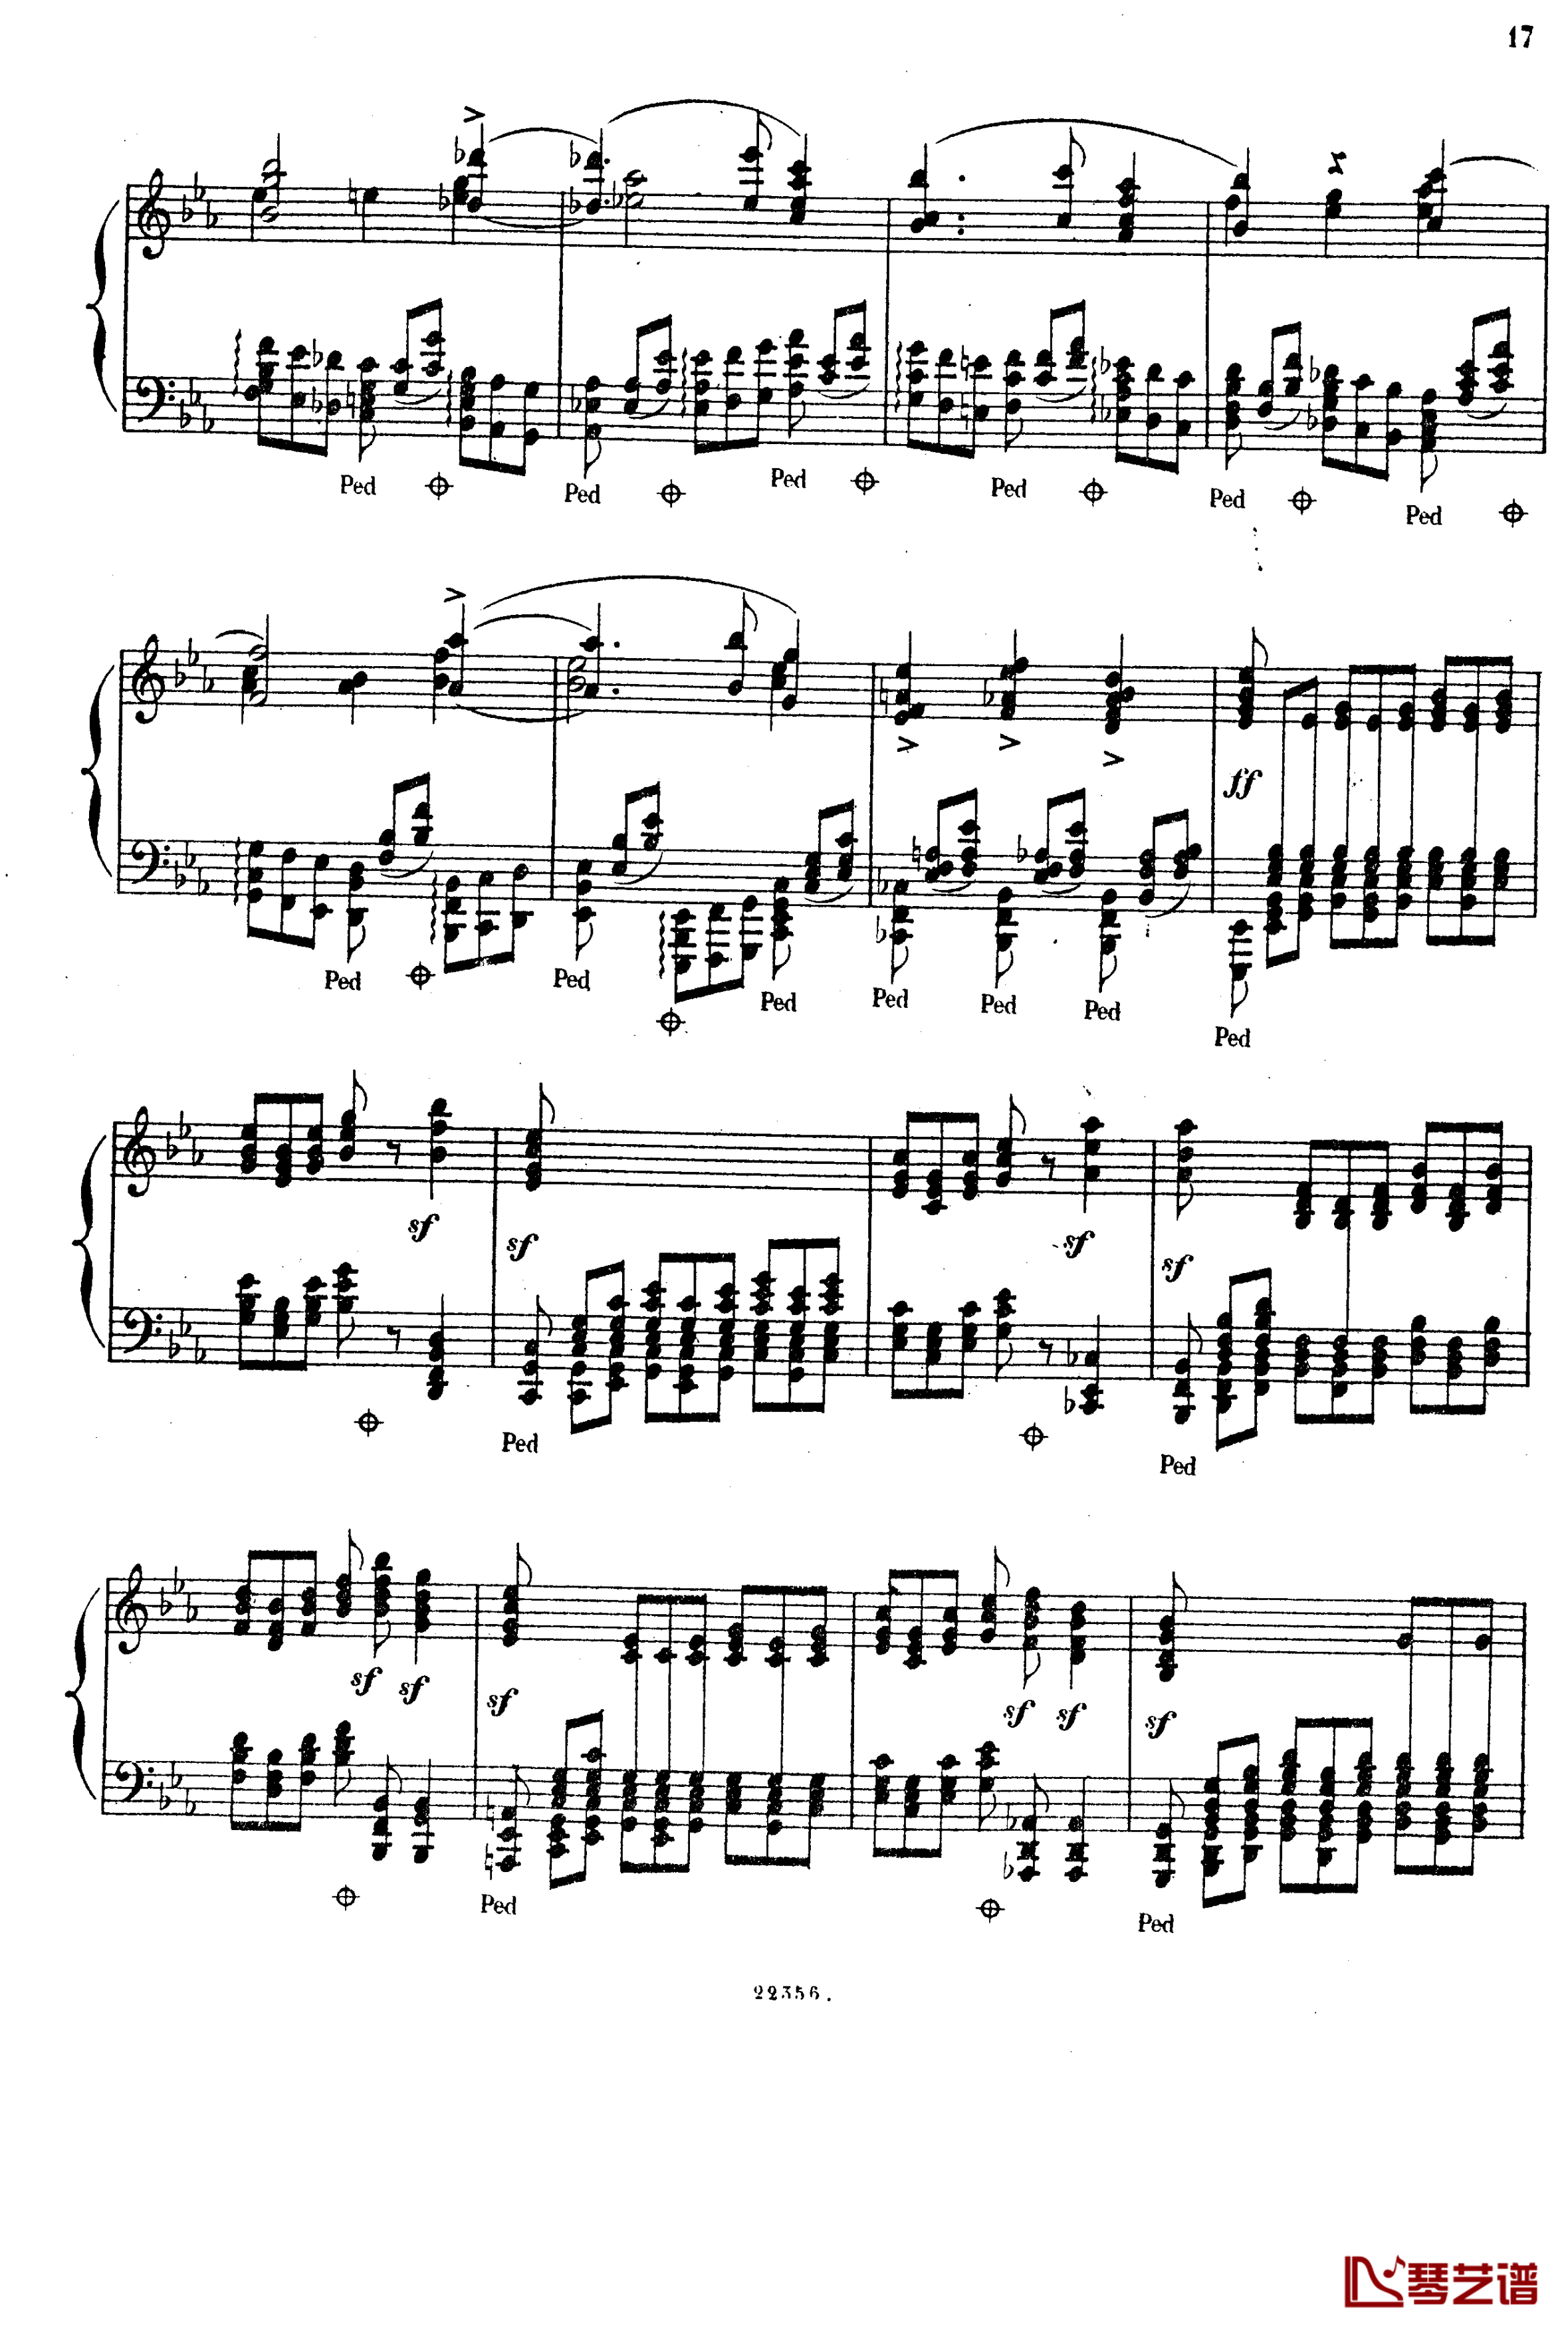  前奏曲与赋格 Op.6钢琴谱-斯甘巴蒂16